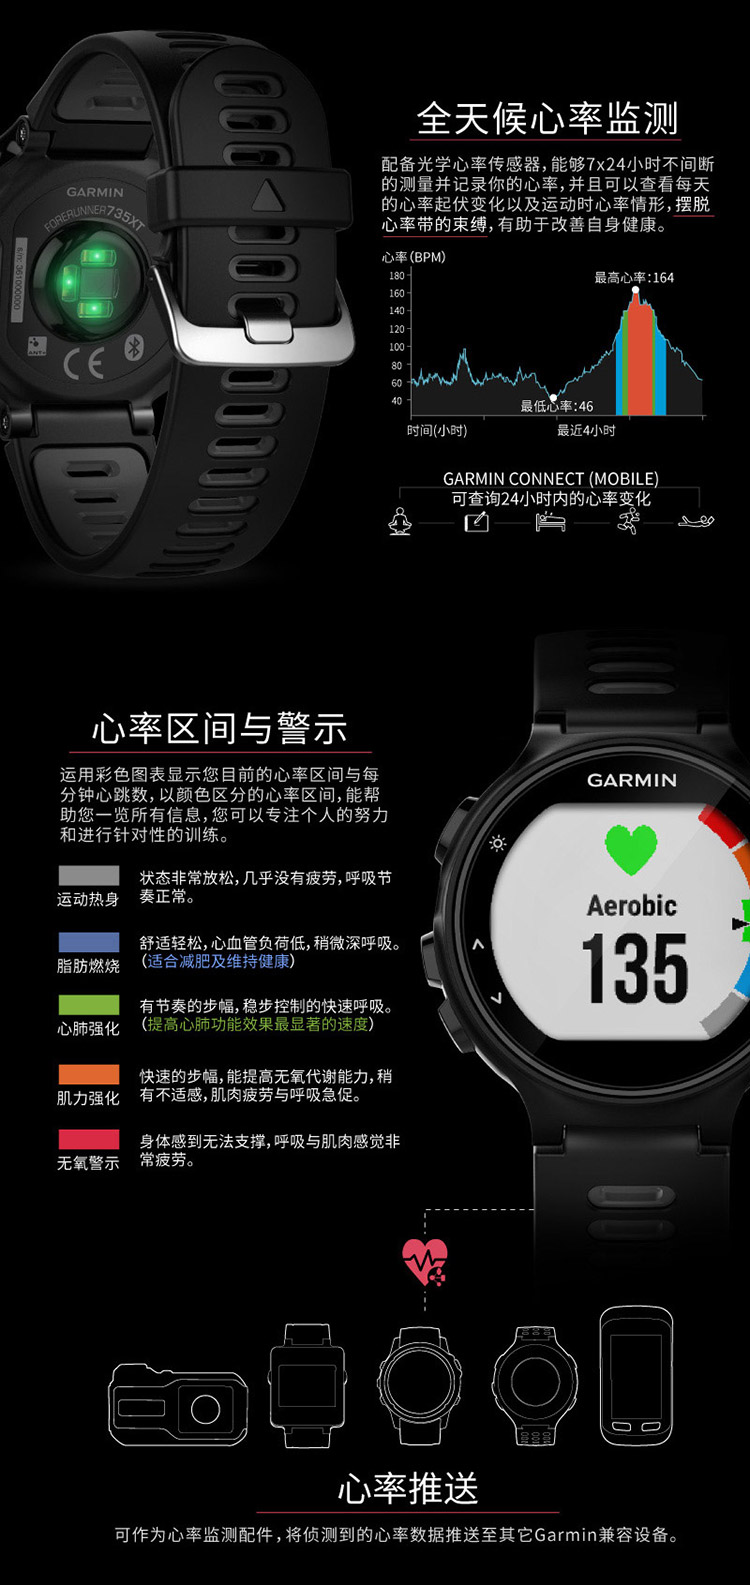 佳明手表中文图标详解图片